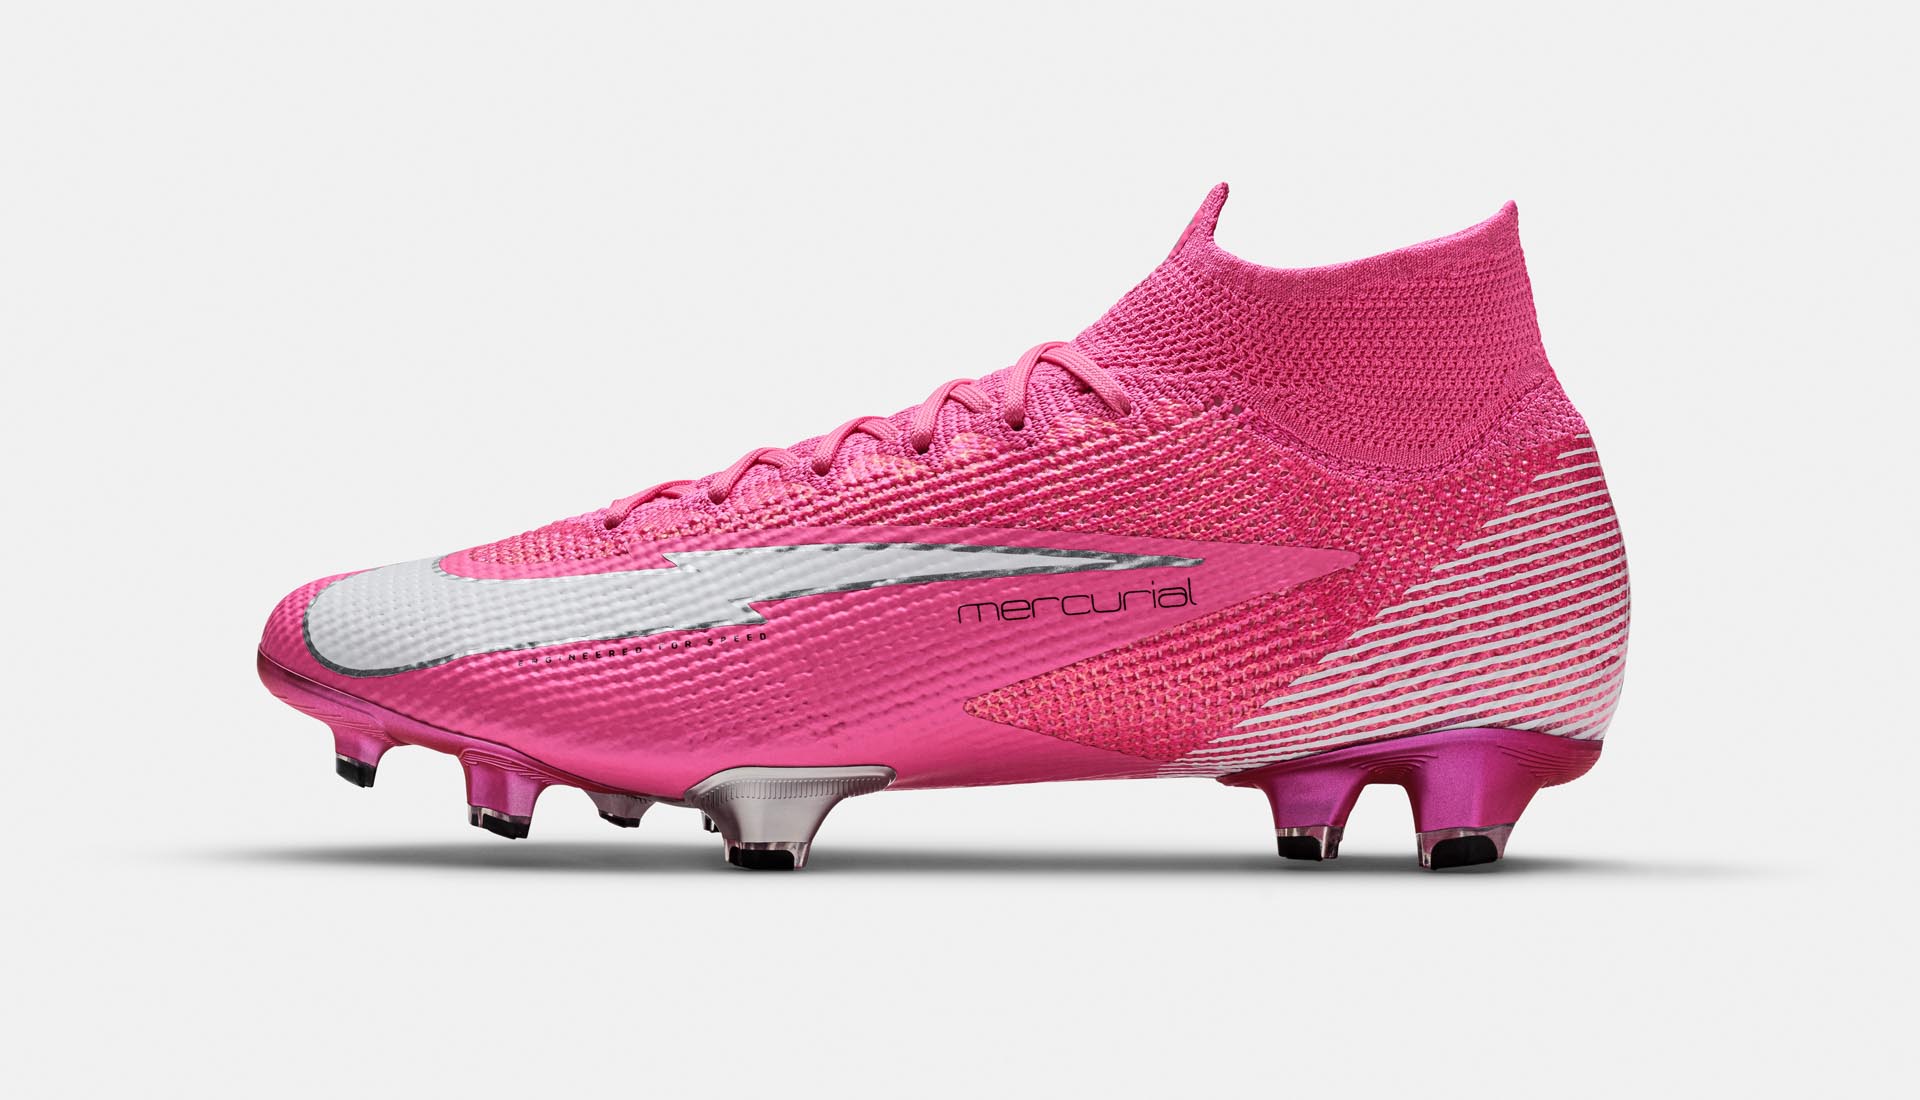 Đôi giày bóng đá Nike màu hồng cực kỳ đẹp mắt được Nike thửa riêng cho Mbappe